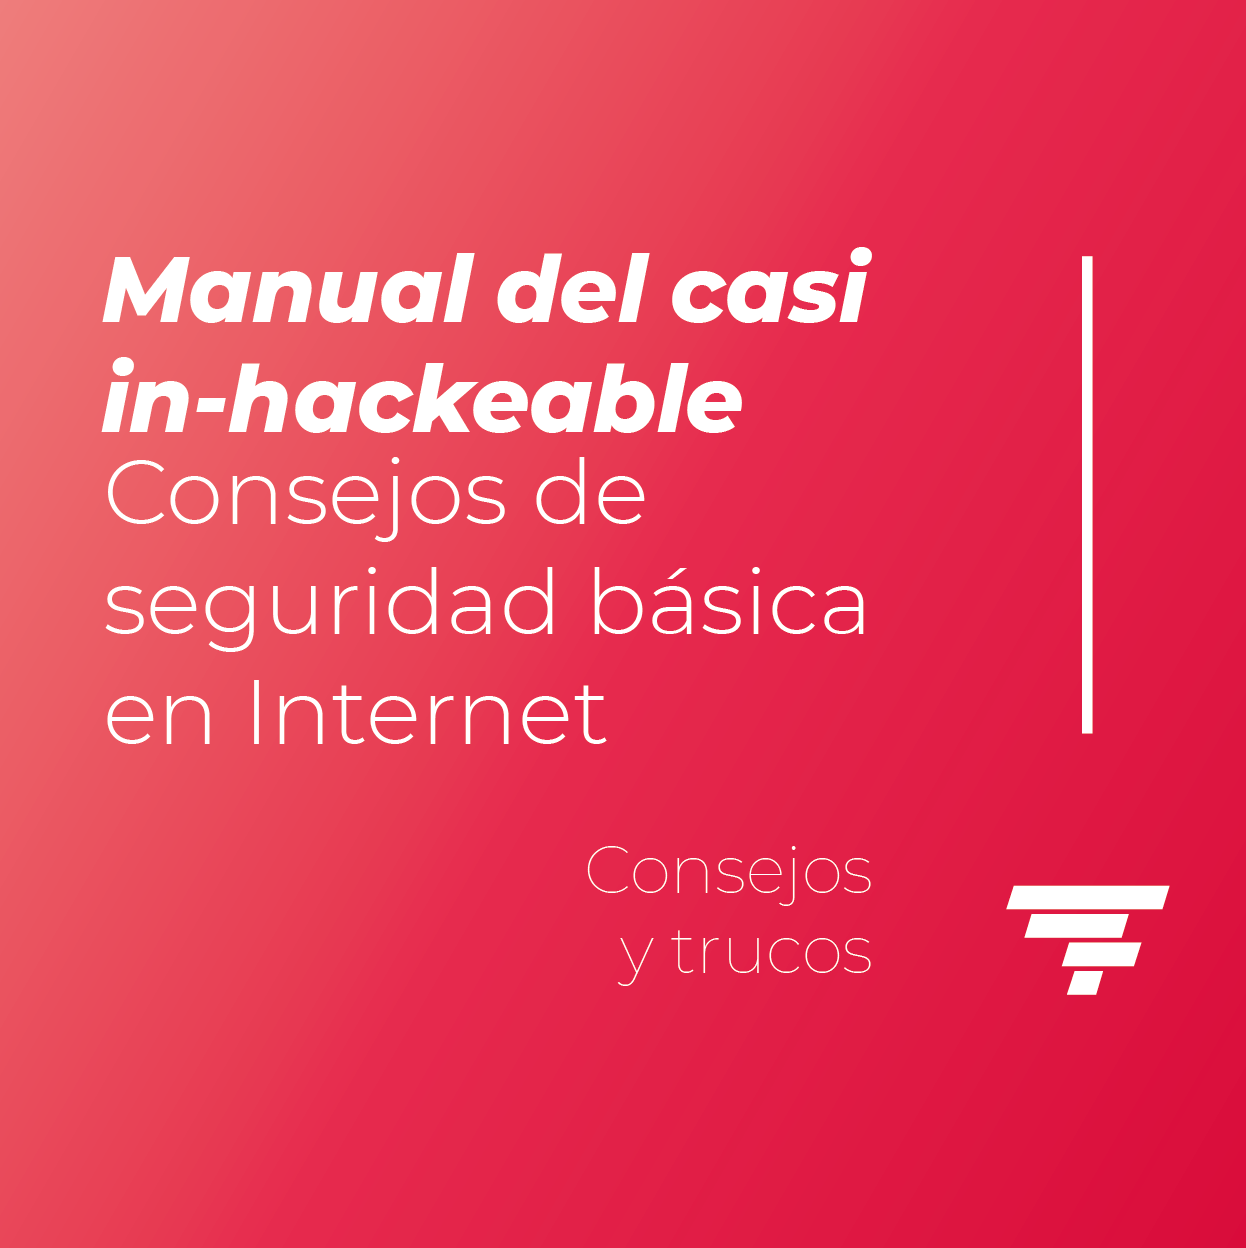 Manual del casi in-hackeable: Consejos de seguridad básica en Internet